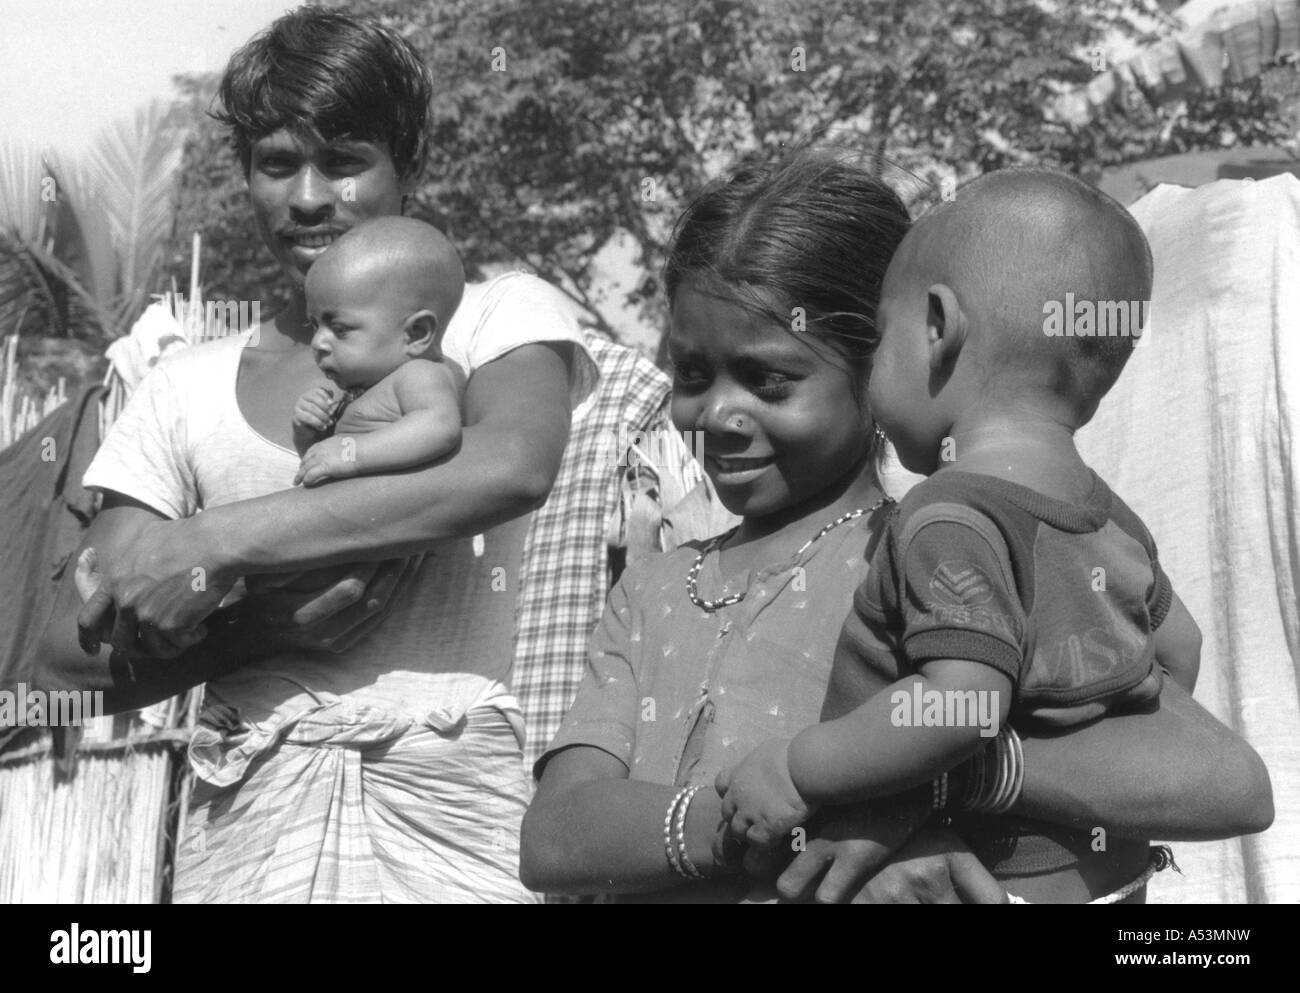 Painet ha1441 266 noir et blanc famille rajshahi bangladesh villageois au pays en développement, de pays moins développés économiquement Banque D'Images